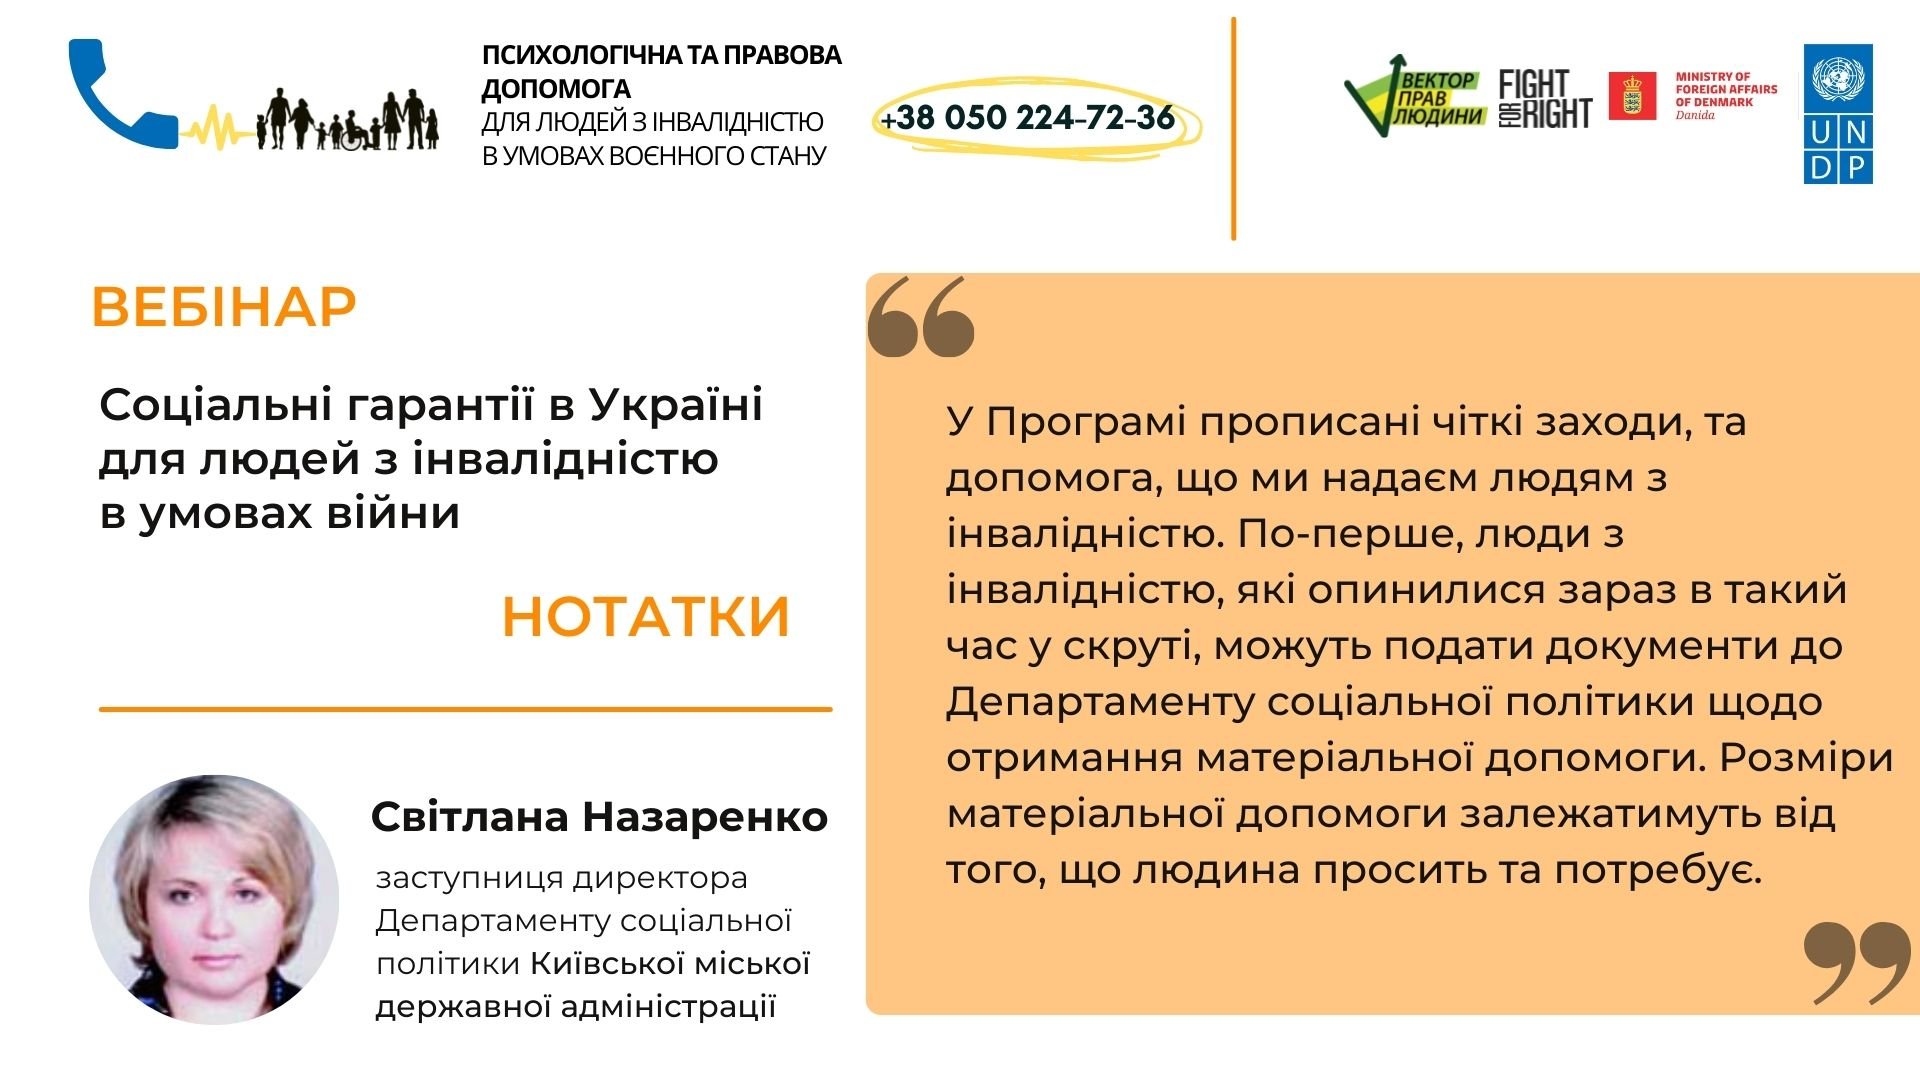 Нотатки за результатами вебінару «Соціальні гарантії в Україні для людей з інвалідністю в умовах війни»